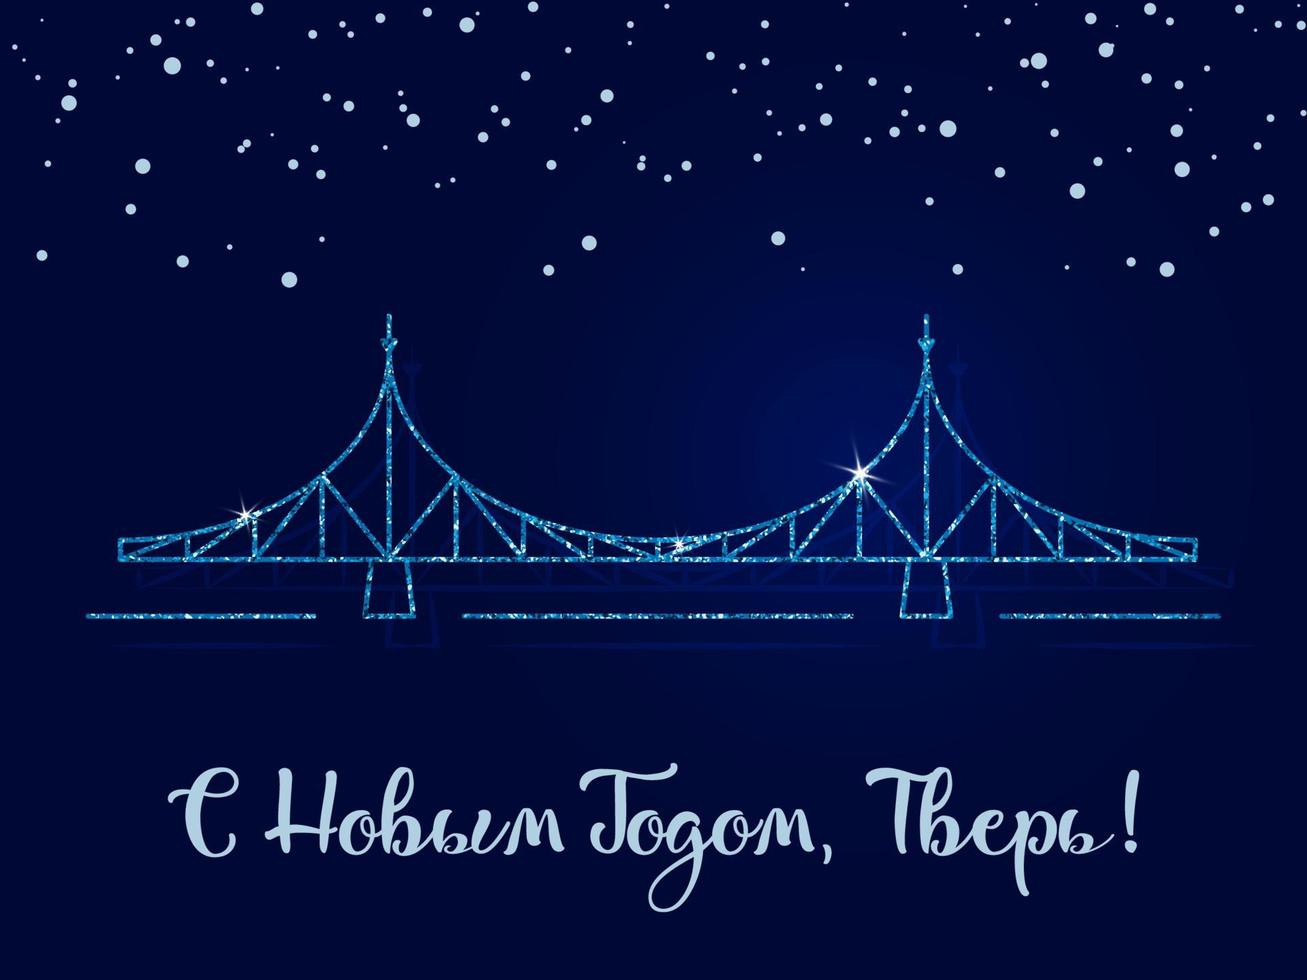 gelukkig nieuwjaar, tver - de inscriptie in het russisch. de oude brug is het belangrijkste symbool van de stad. vectorillustratie. donkerblauwe achtergrond met sneeuwvlokken. vector